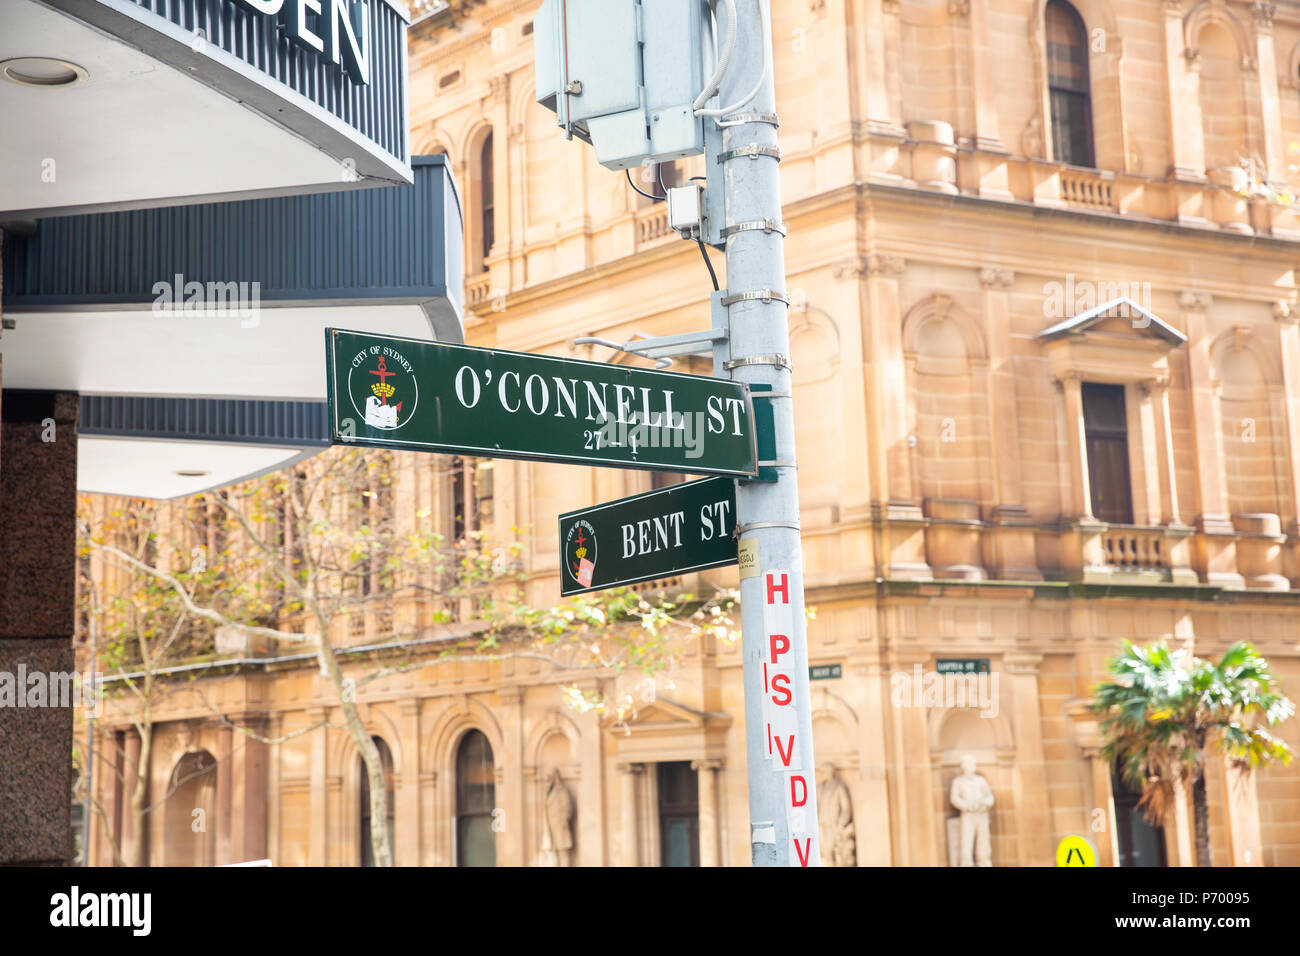 La calle O'Connell y Bent street en el centro de la ciudad de Sydney, Australia Foto de stock